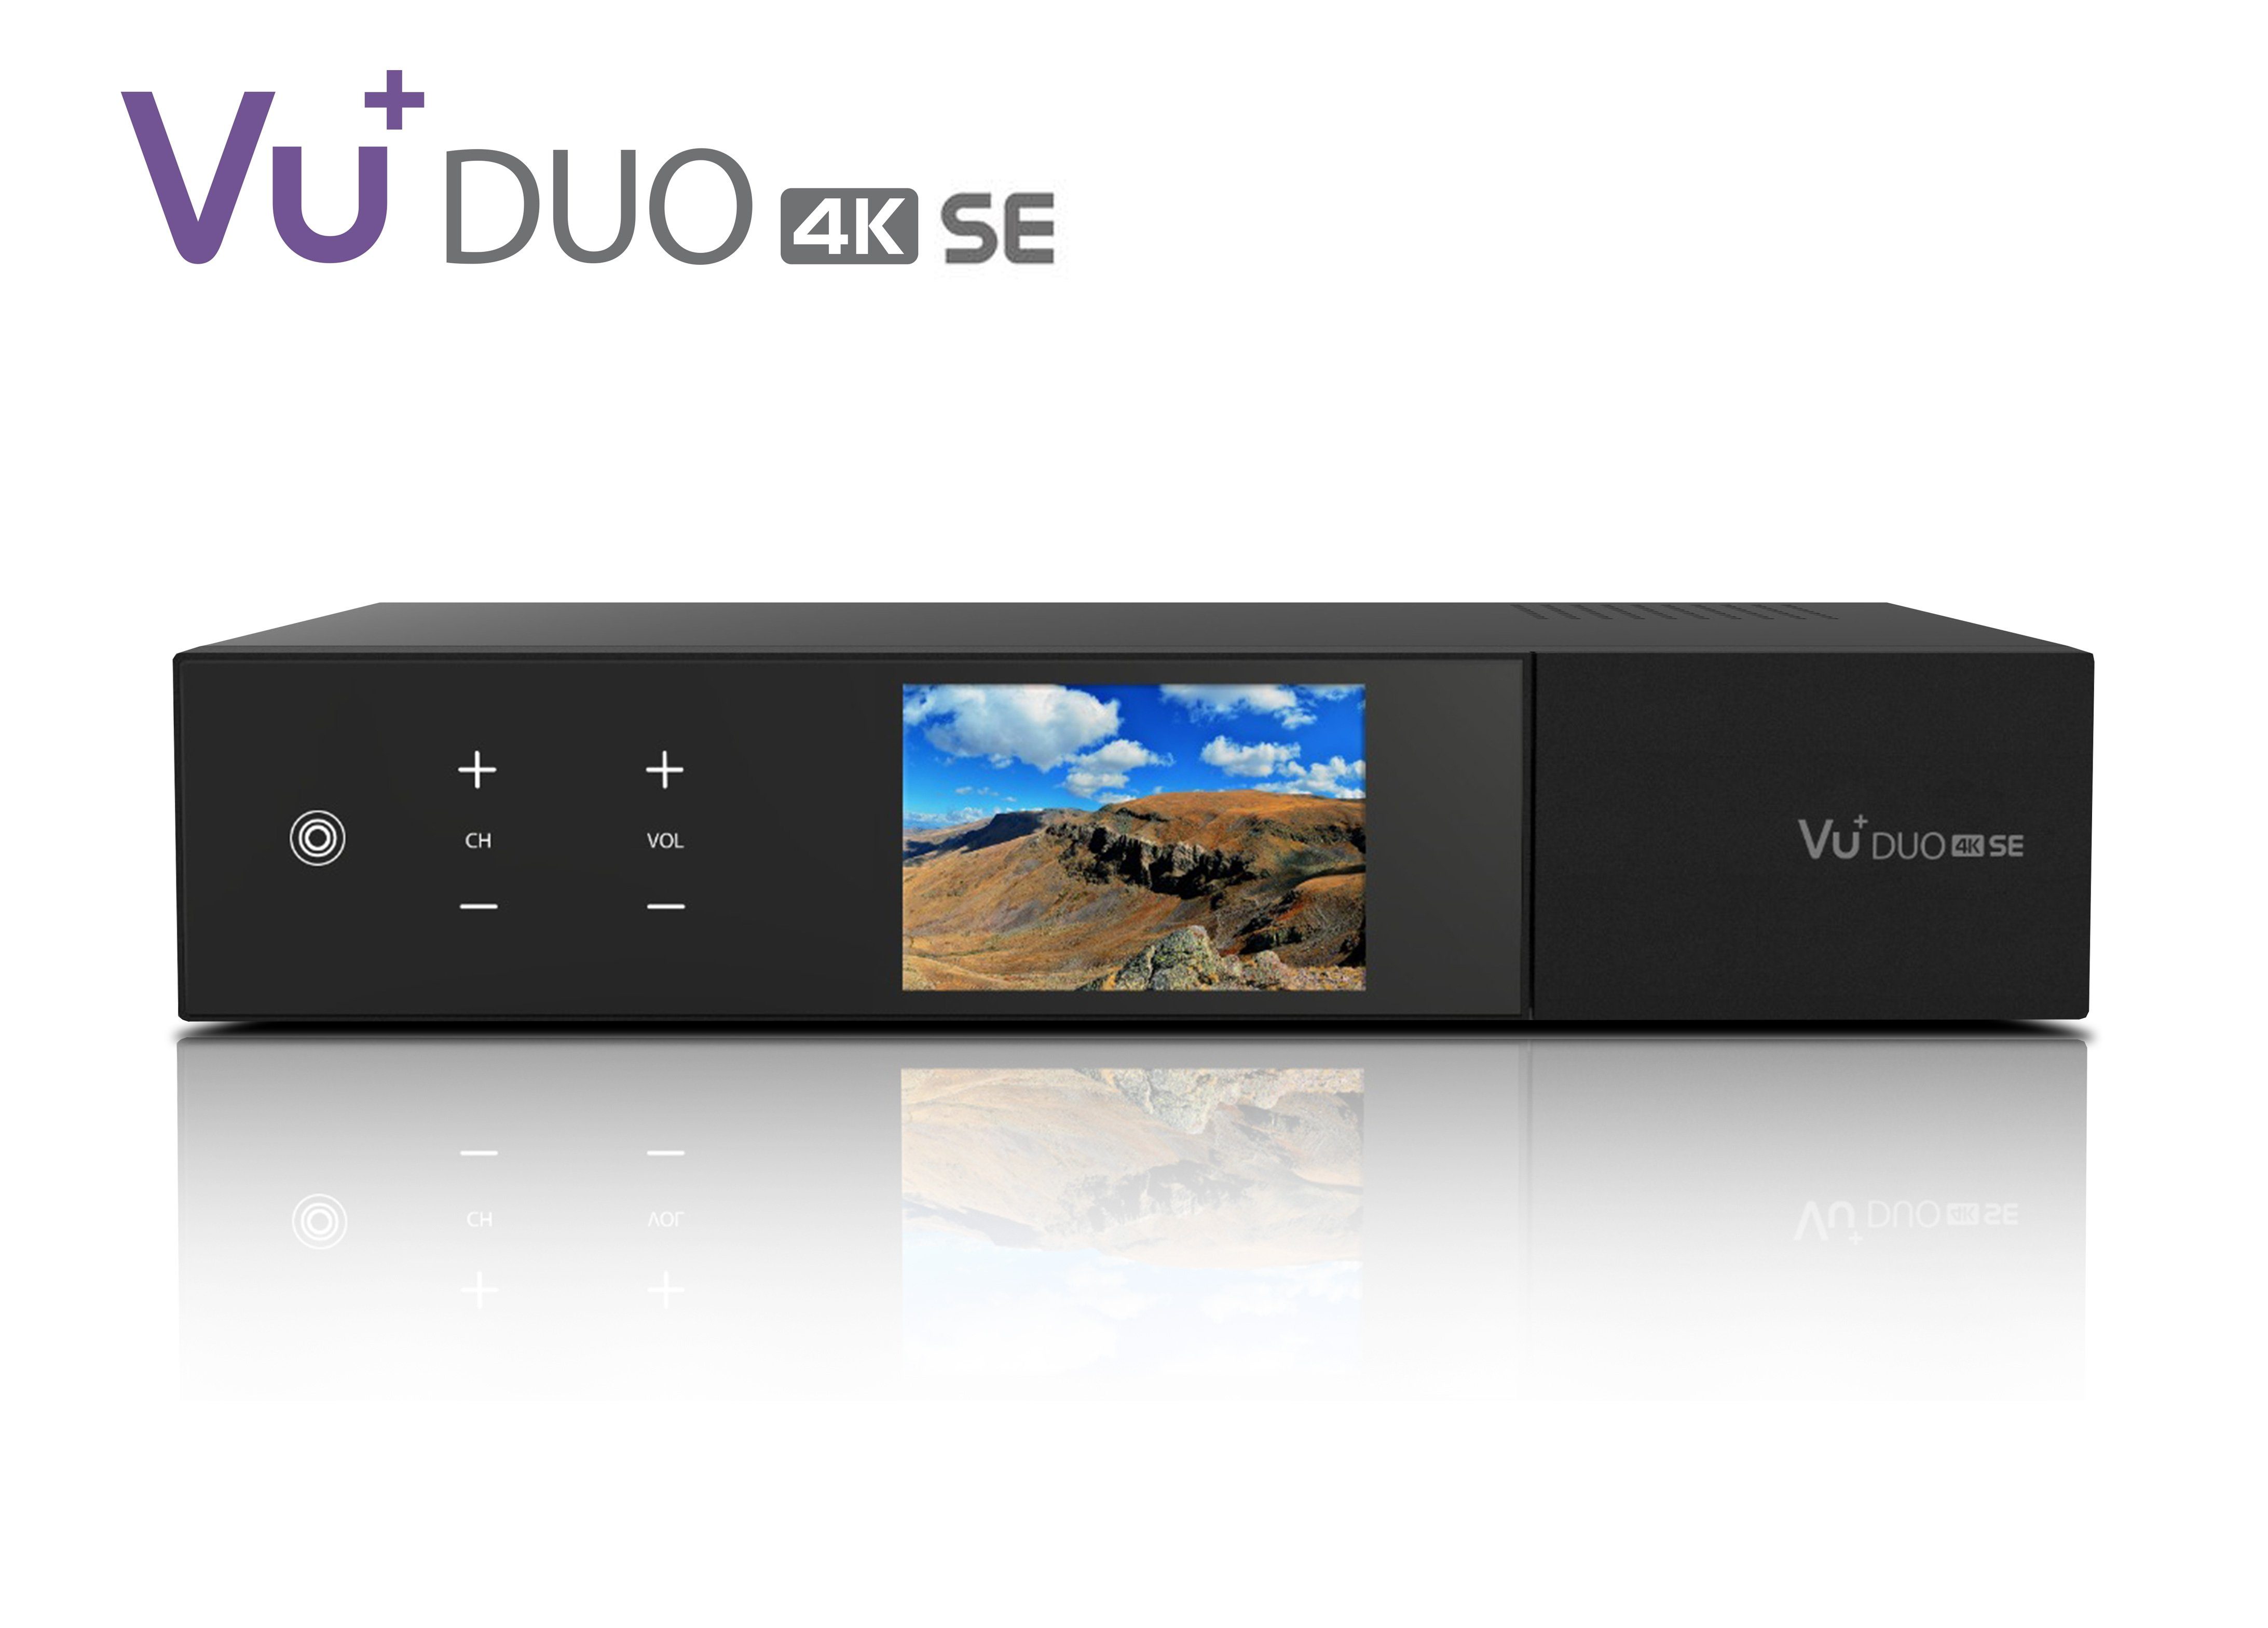 VU+ VU+ Duo 4K SE 1x DVB-S2X FBC Twin Tuner 2 TB HDD Linux Receiver UHD Satellitenreceiver